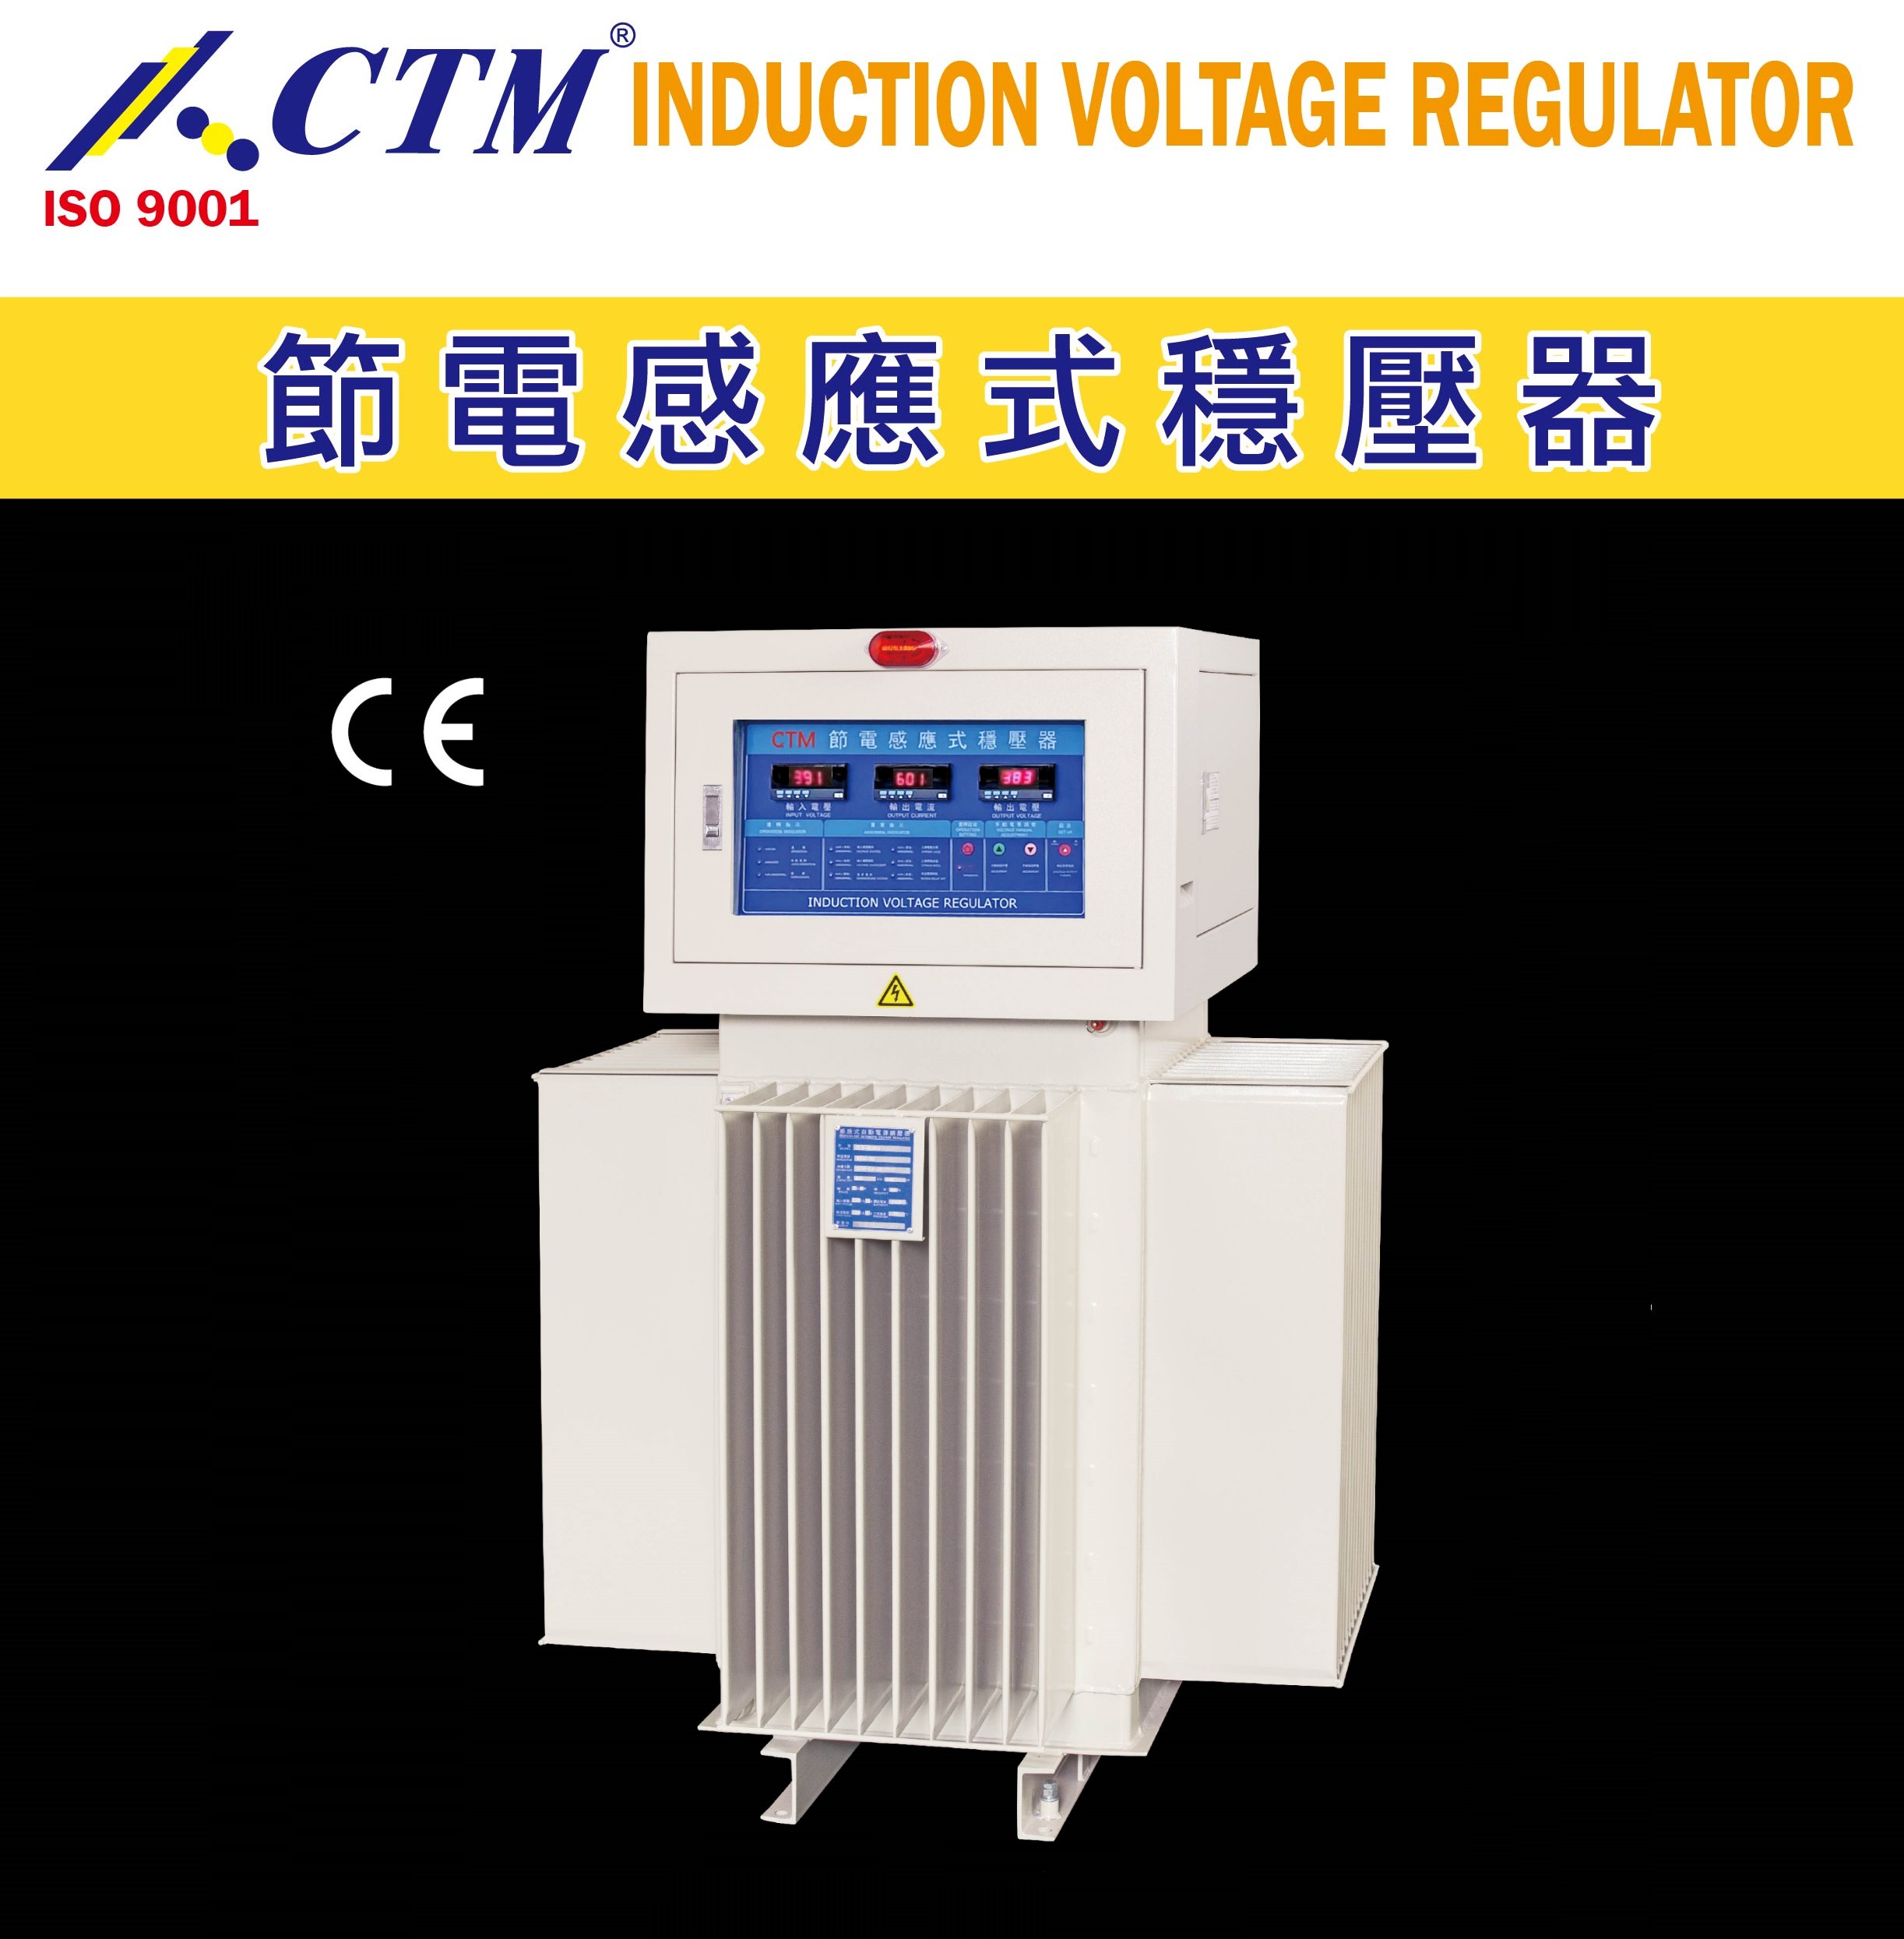 
                                Induction Voltage Regulator - I.V.R.
                            